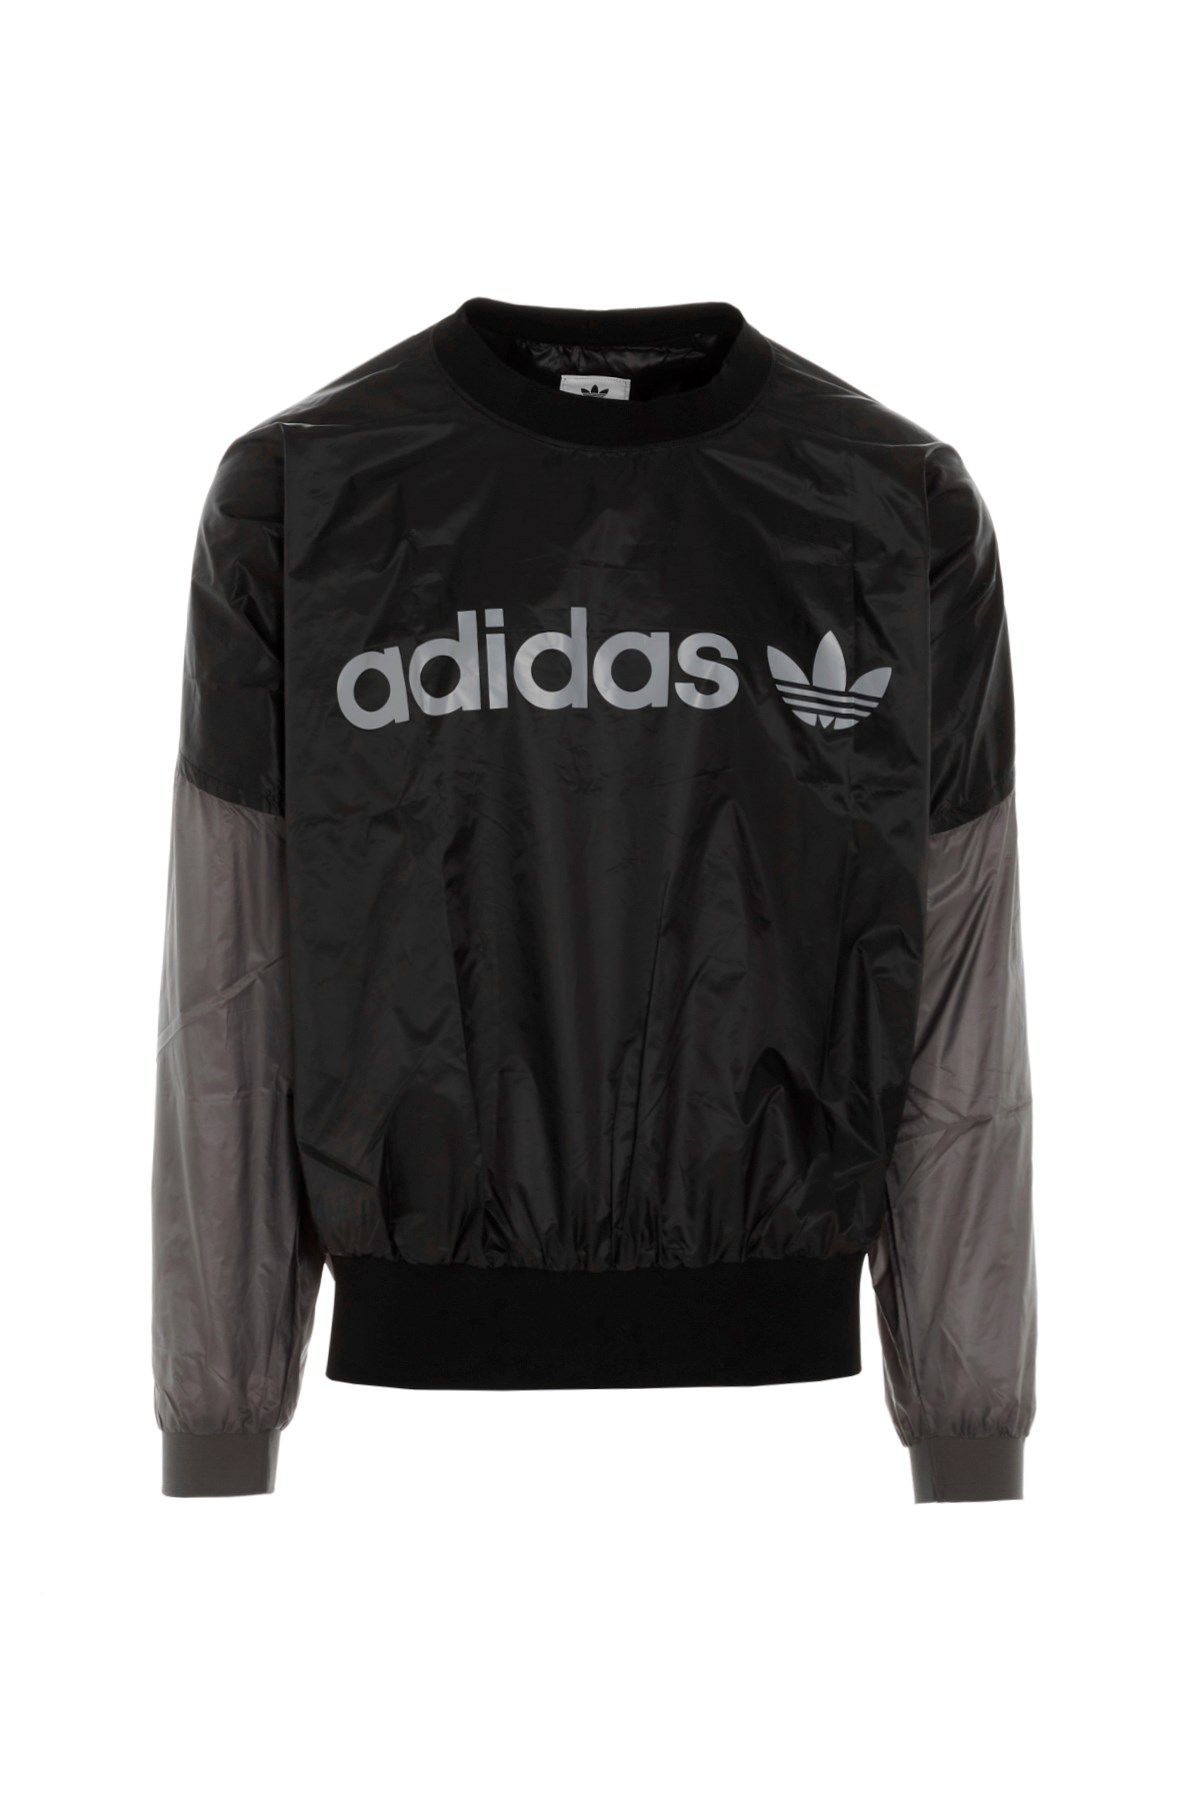 ADIDAS STATEMENT Adidas Statement ‘Cr Neck Top Hm’ Sweatshirt In Colla